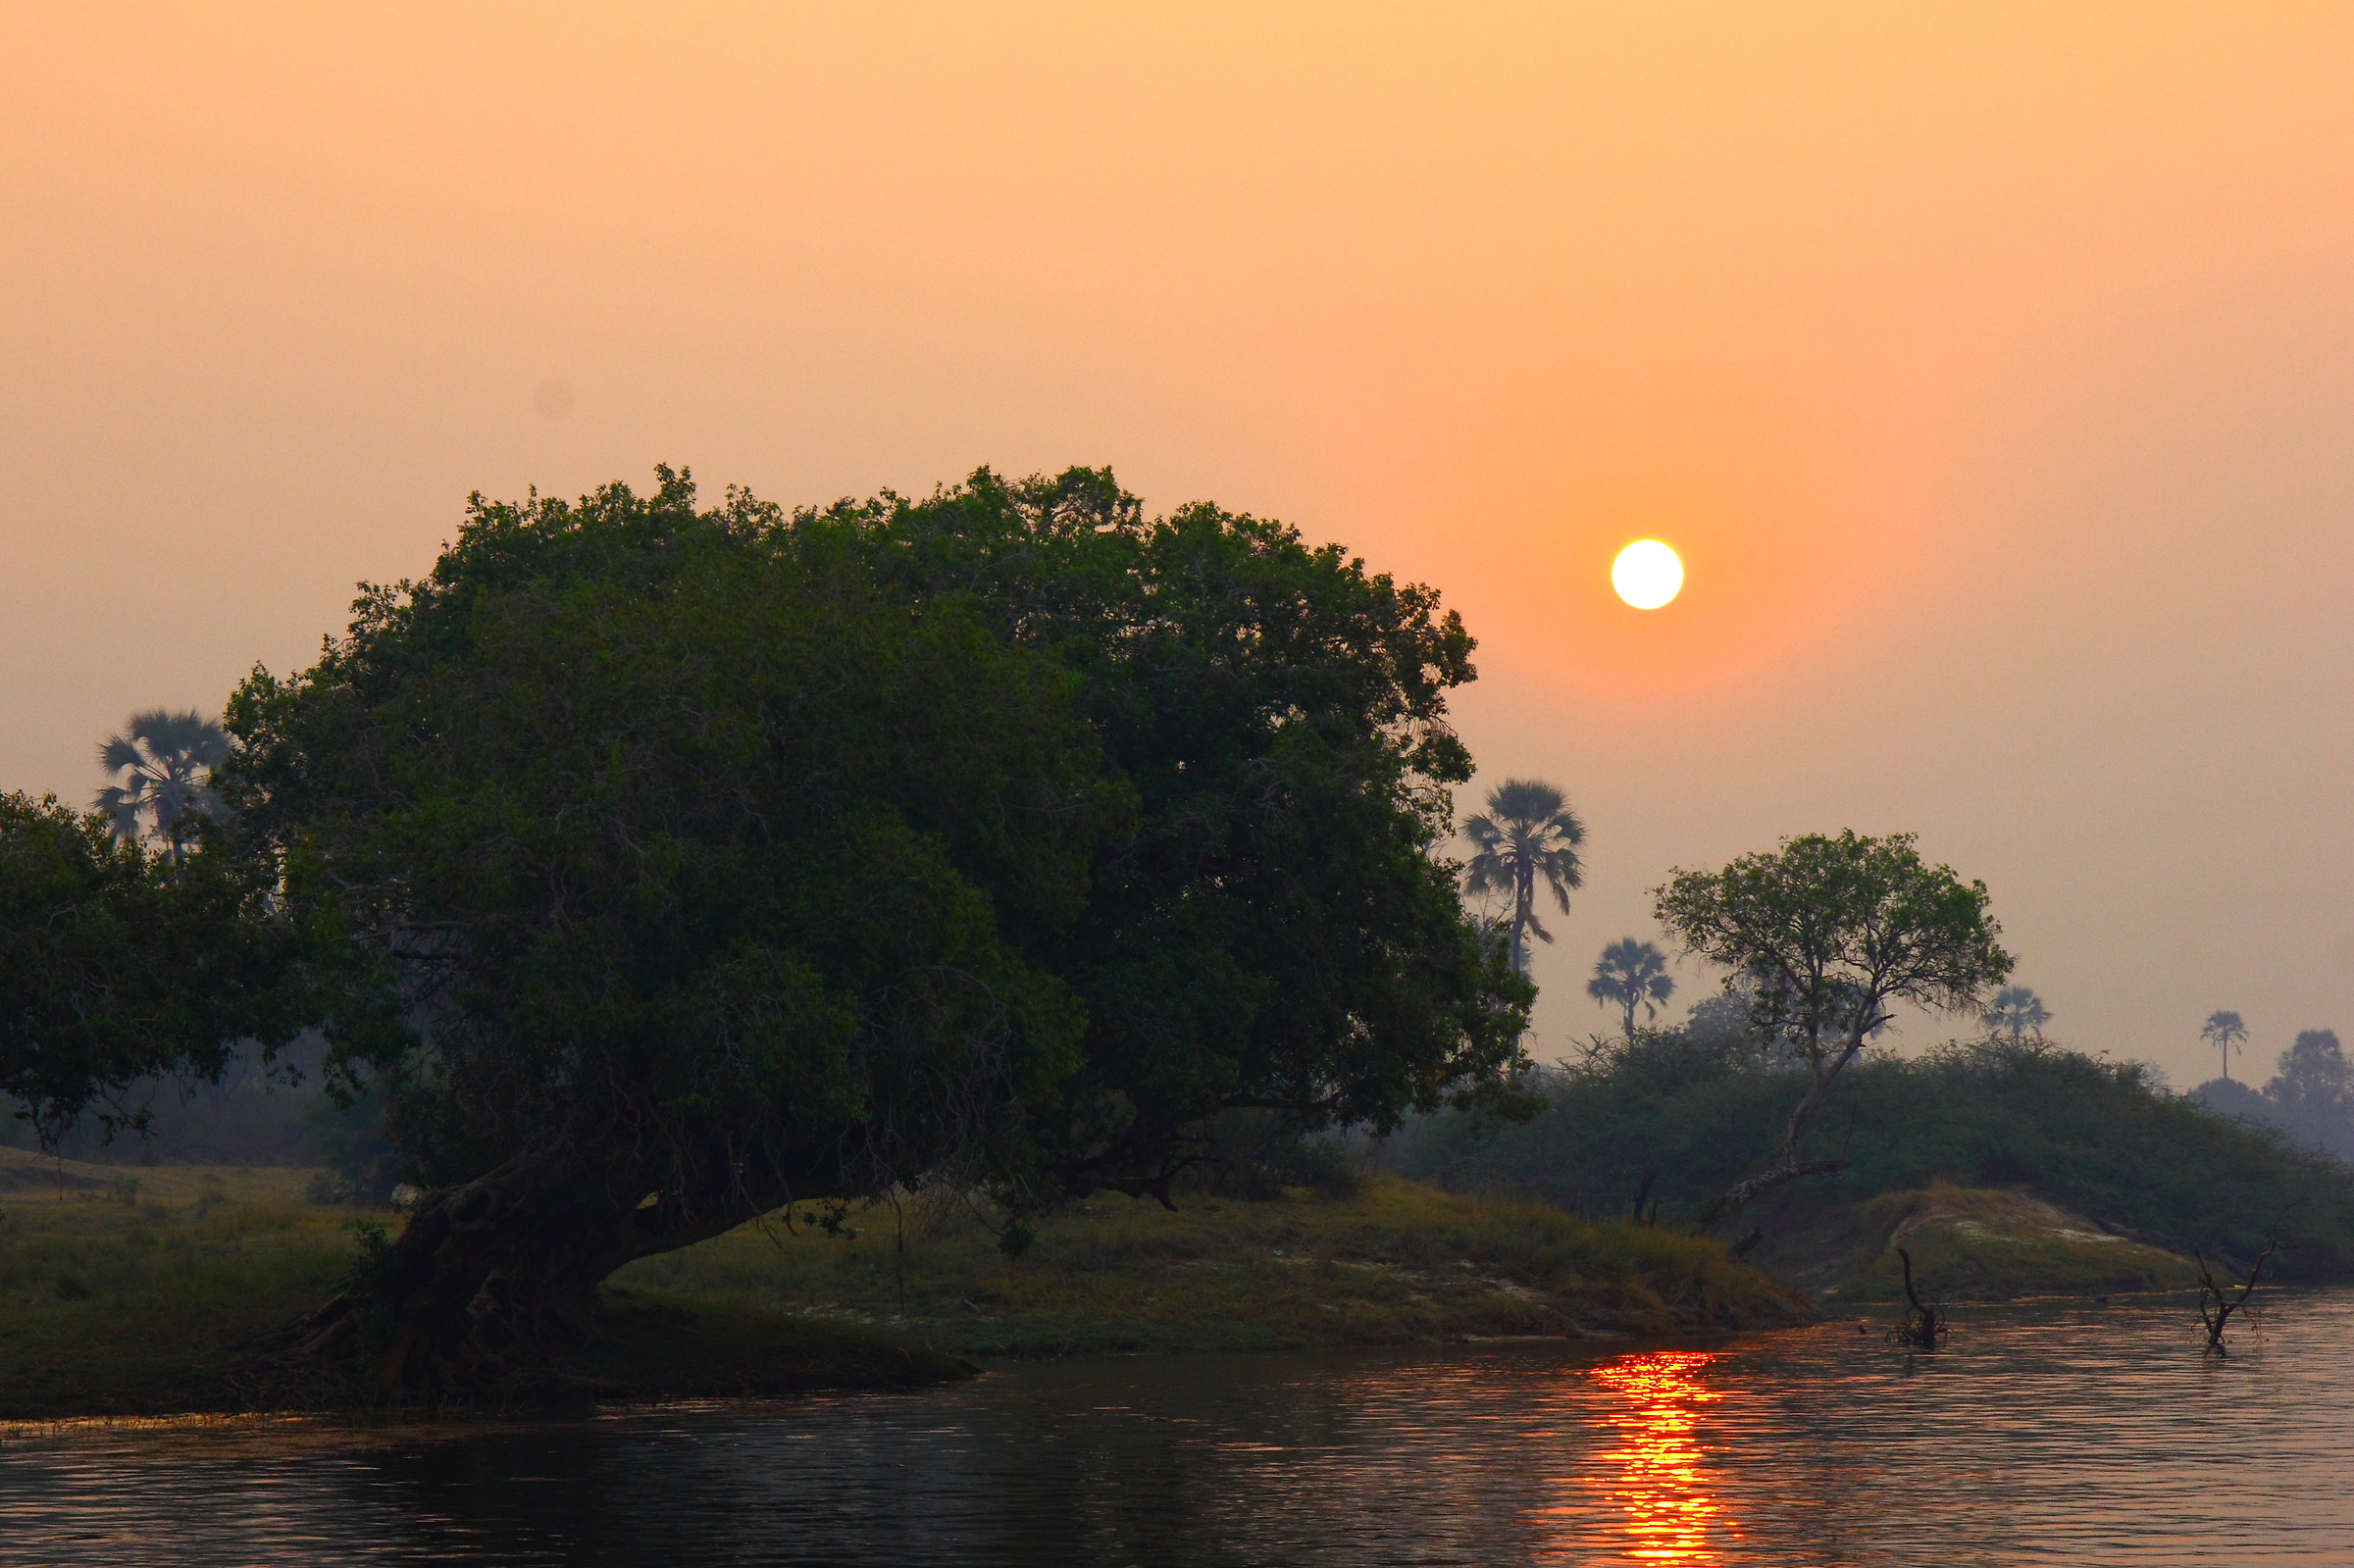 Sunset on the Zambezi...